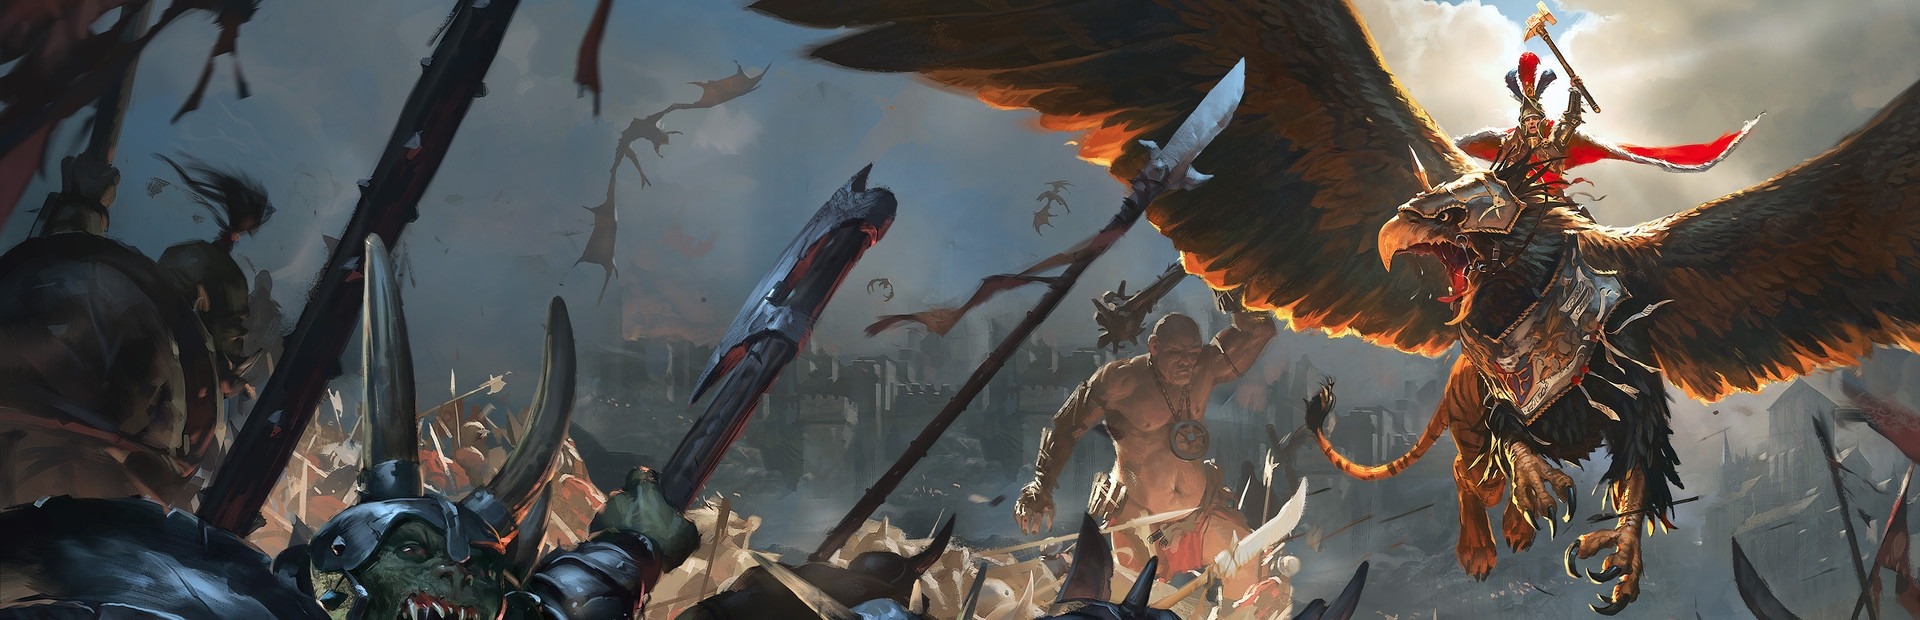 Total War Warhammer - Savage Edition